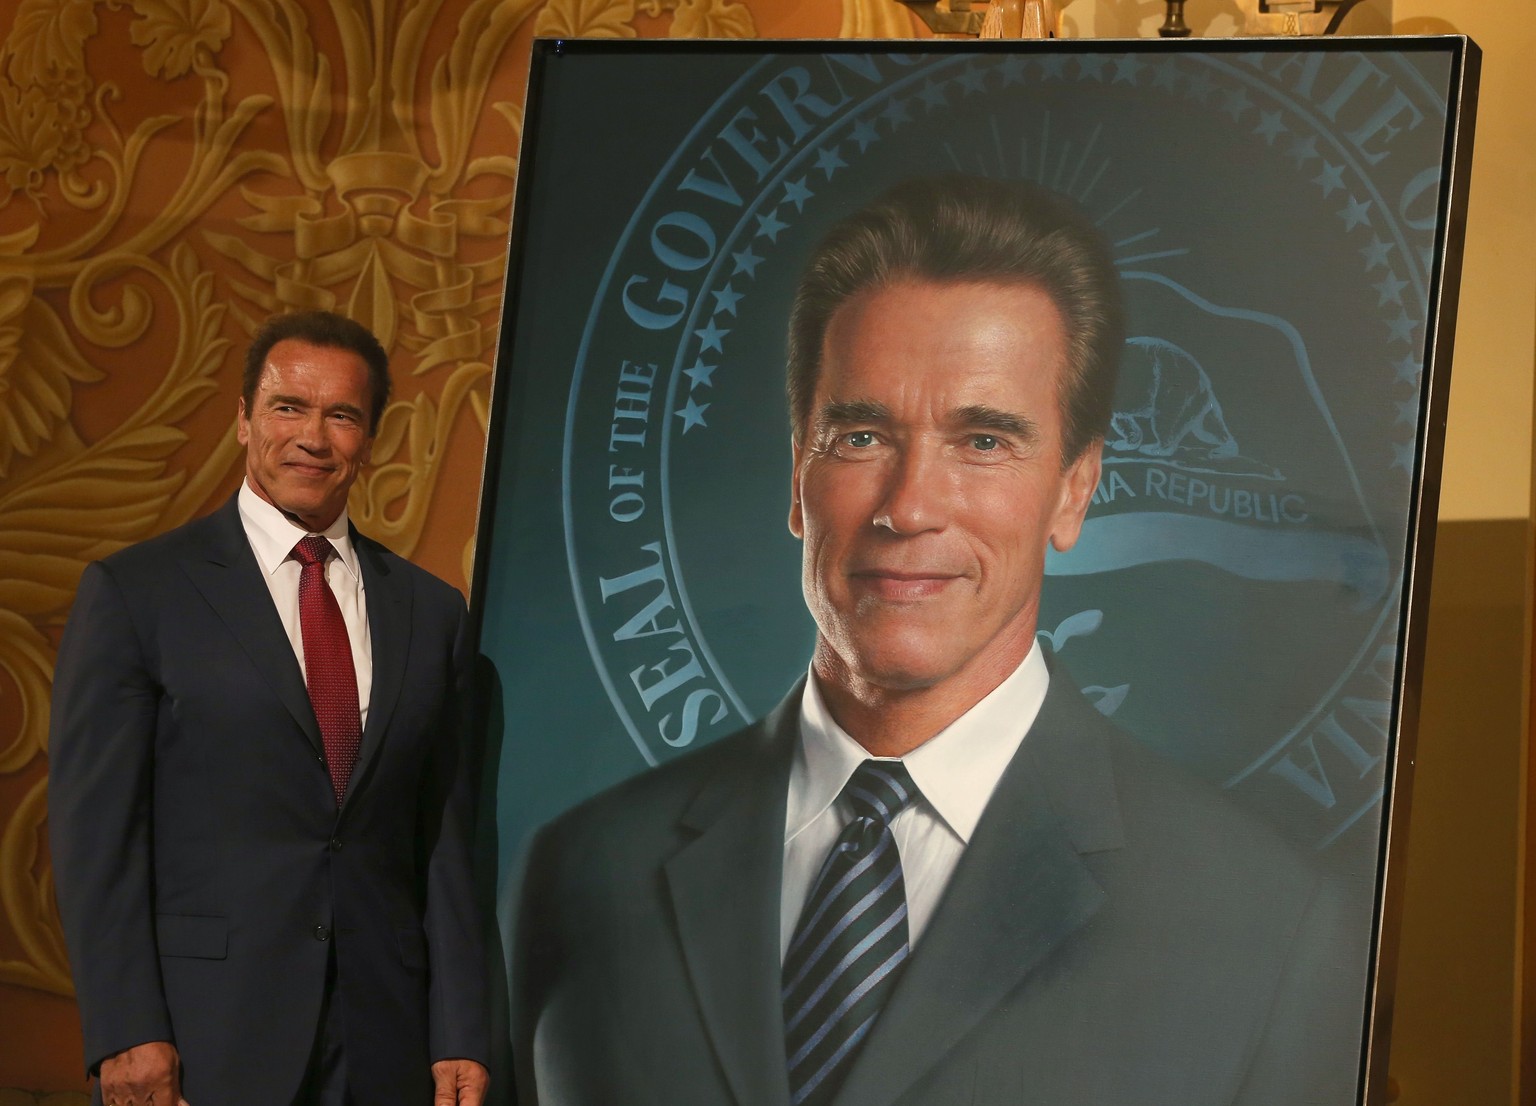 Wie aus dem Gesicht geschnitten: Das fotorealistische Gemälde des Schauspielers Arnold Schwarzenegger, der zum Gouverneur wurde.